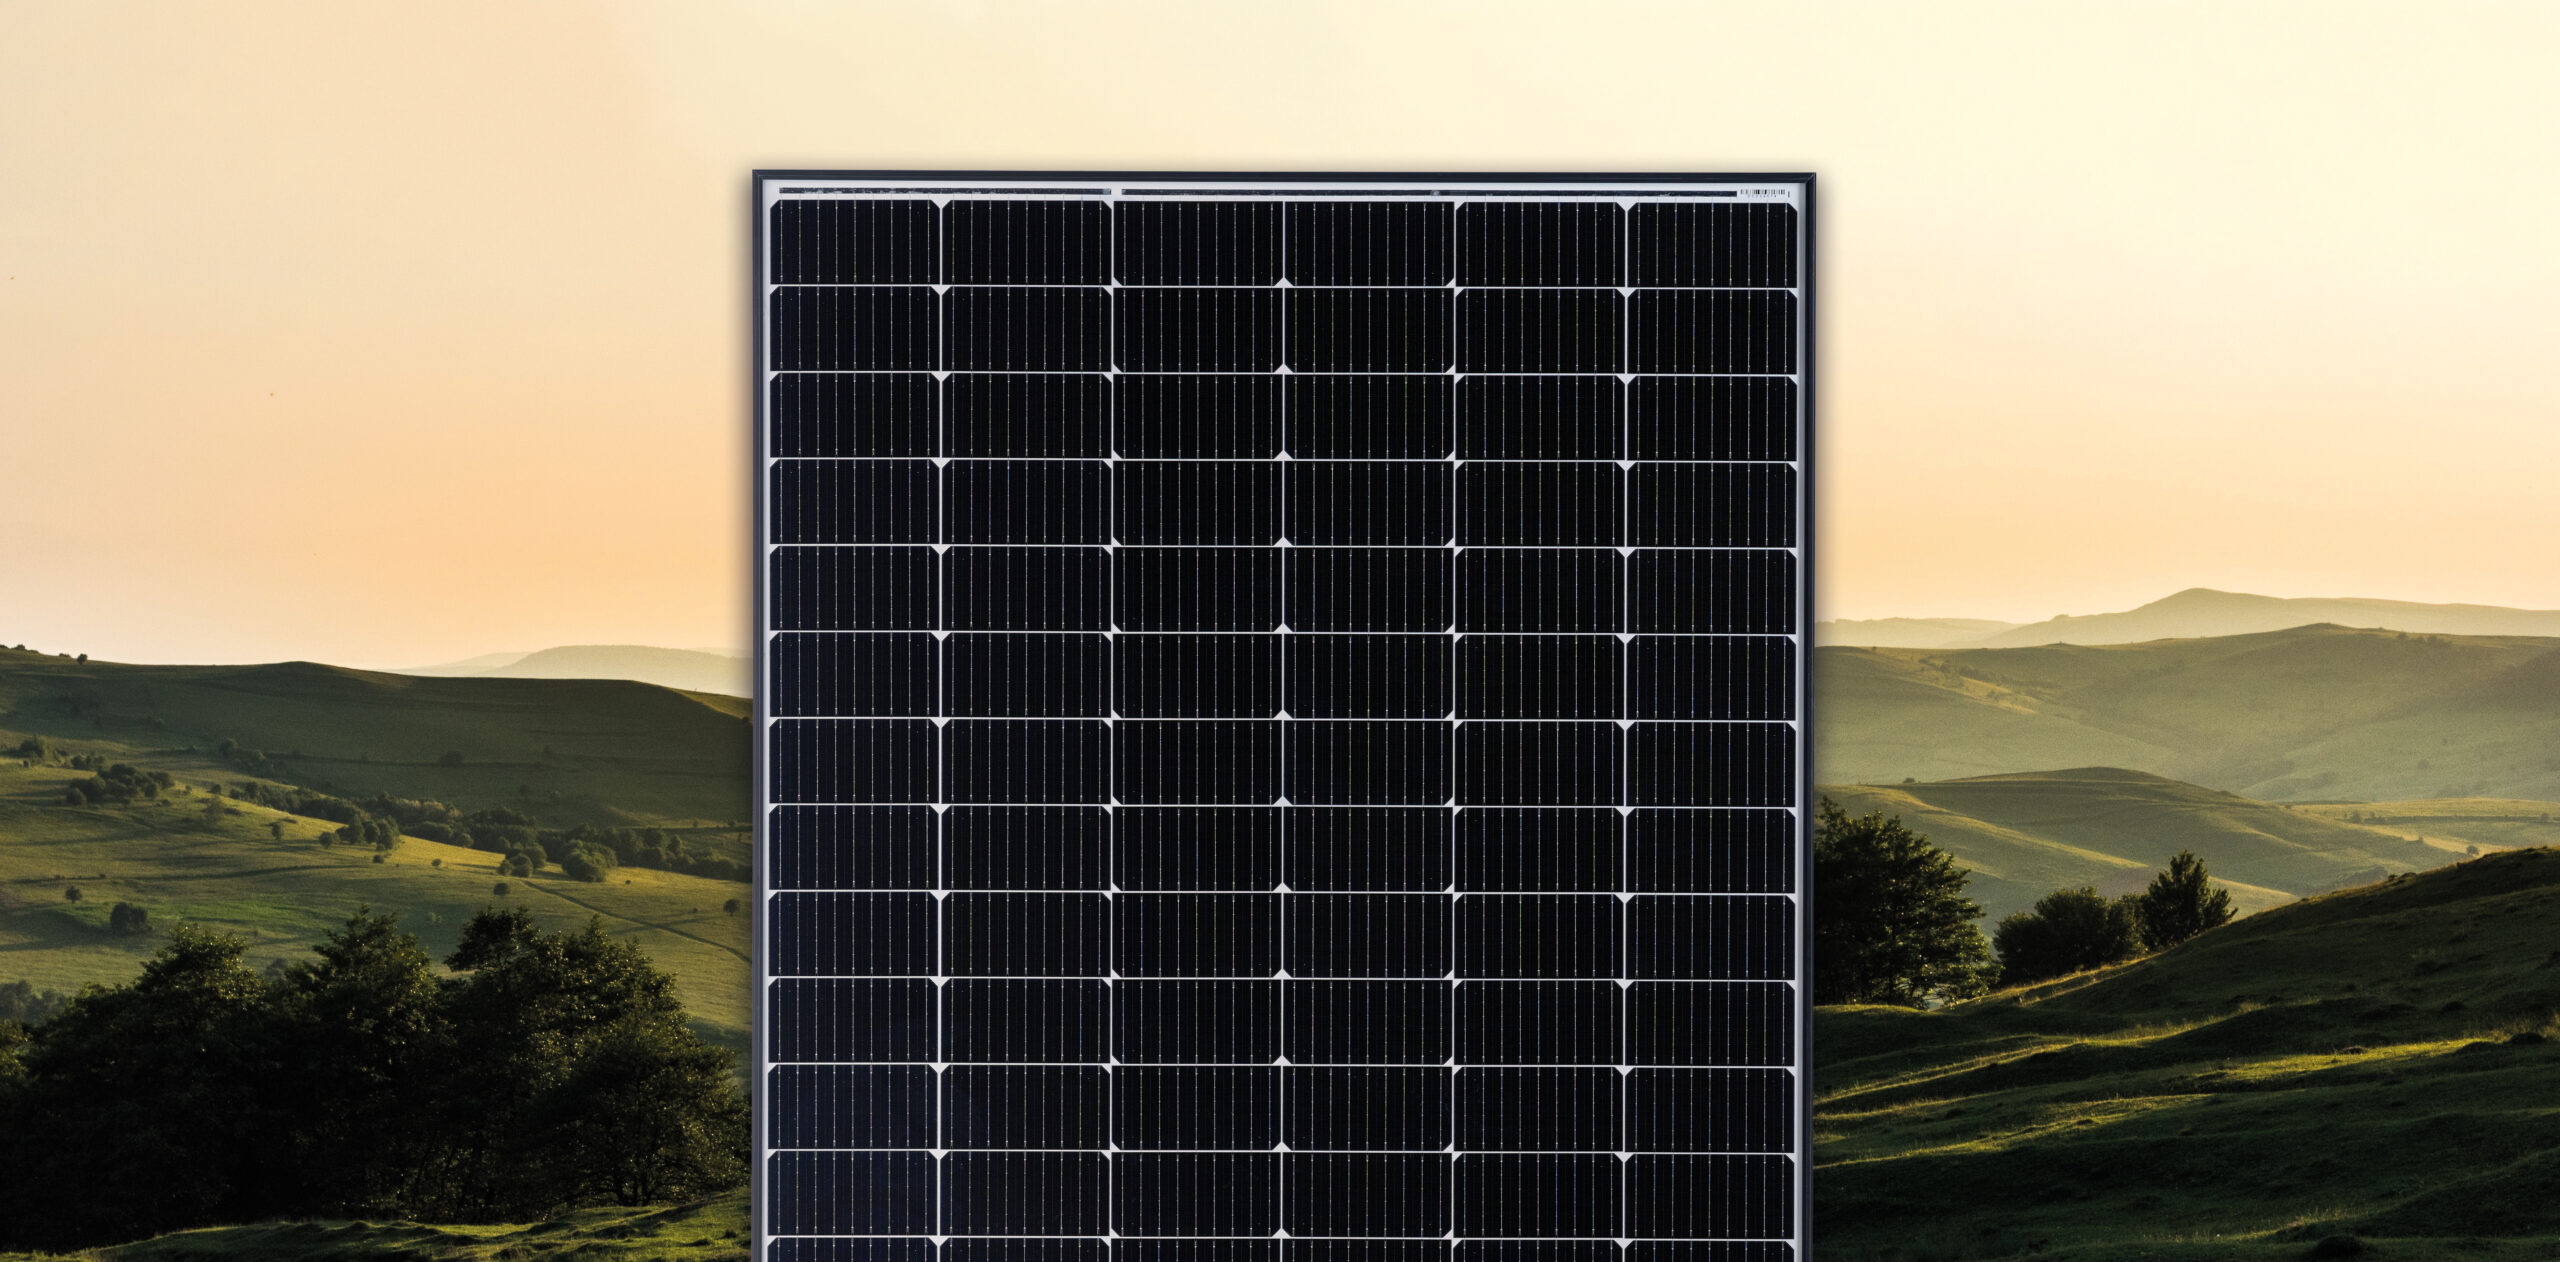  Fin de vie & recyclage des modules photovoltaiques 